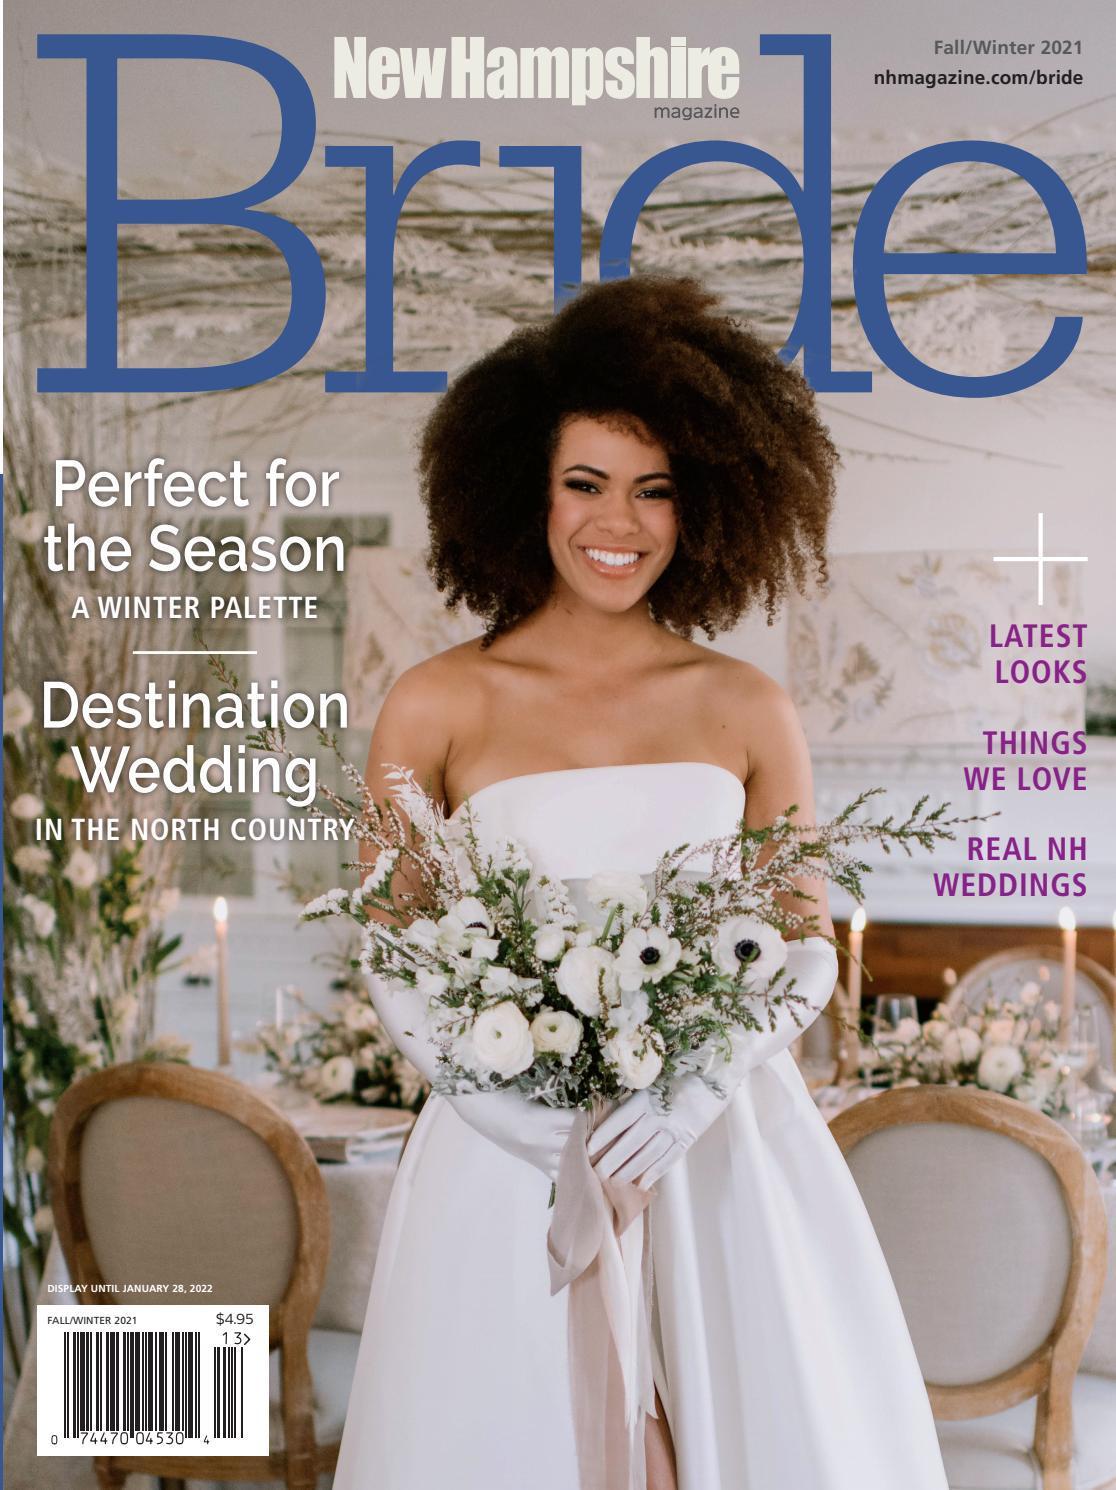 New Hampshire Magazine's Bride Fall-Winter 2021